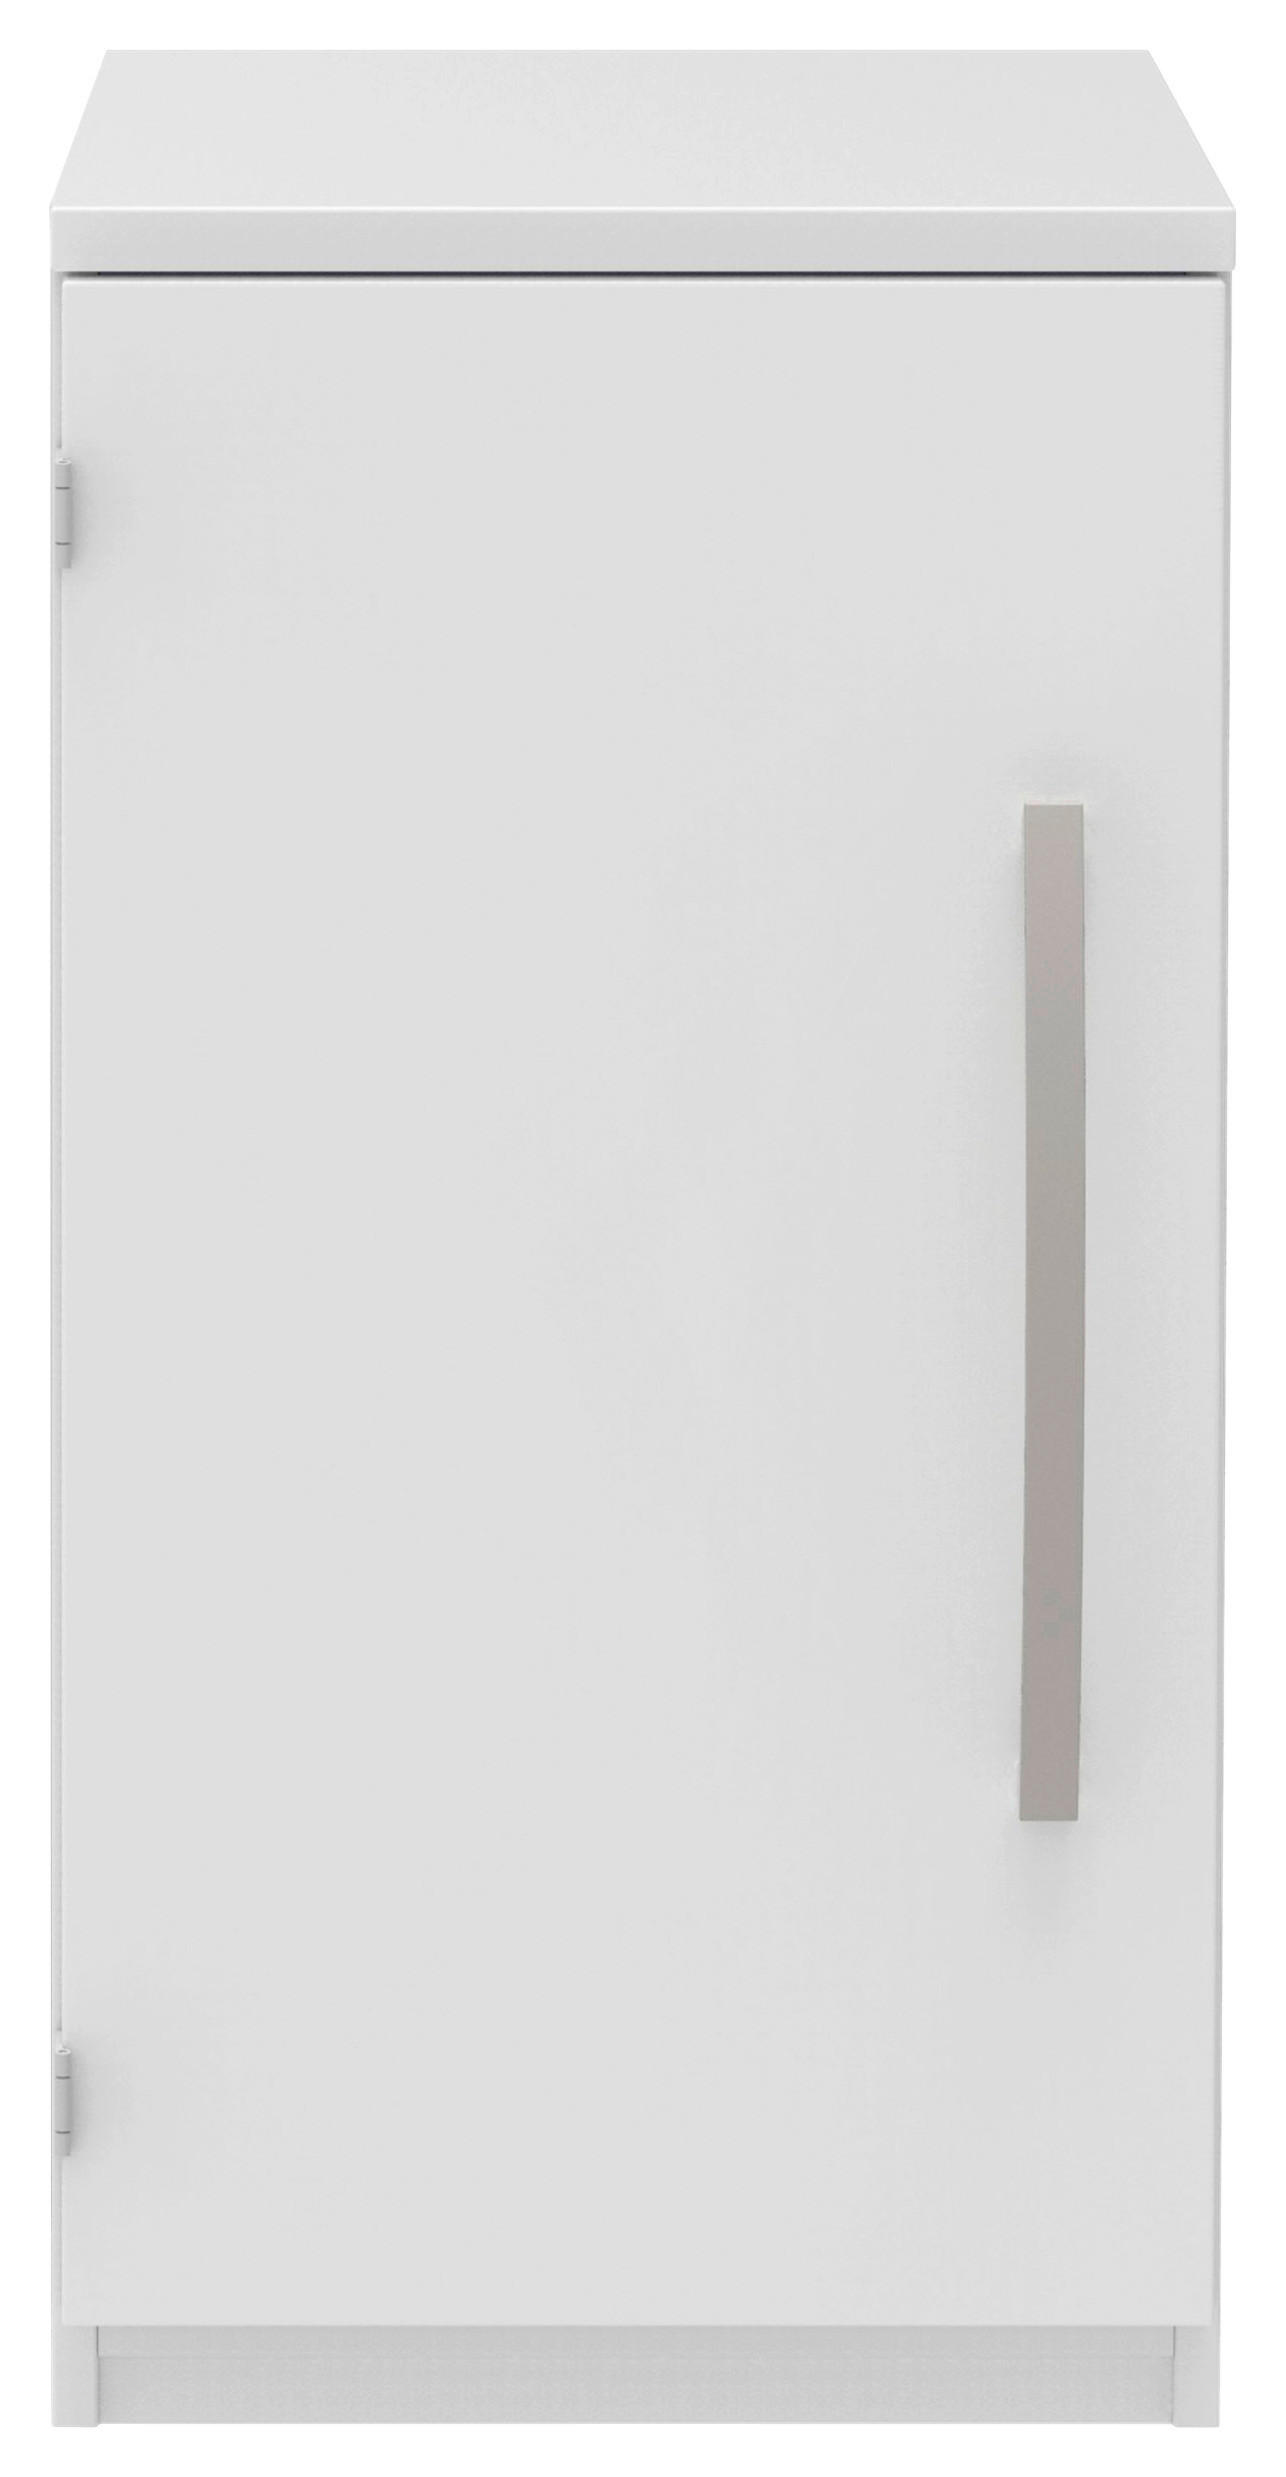 AKTENSCHRANK Weiß  - Weiß, KONVENTIONELL, Holzwerkstoff (40/76,5/43cm) - Moderano